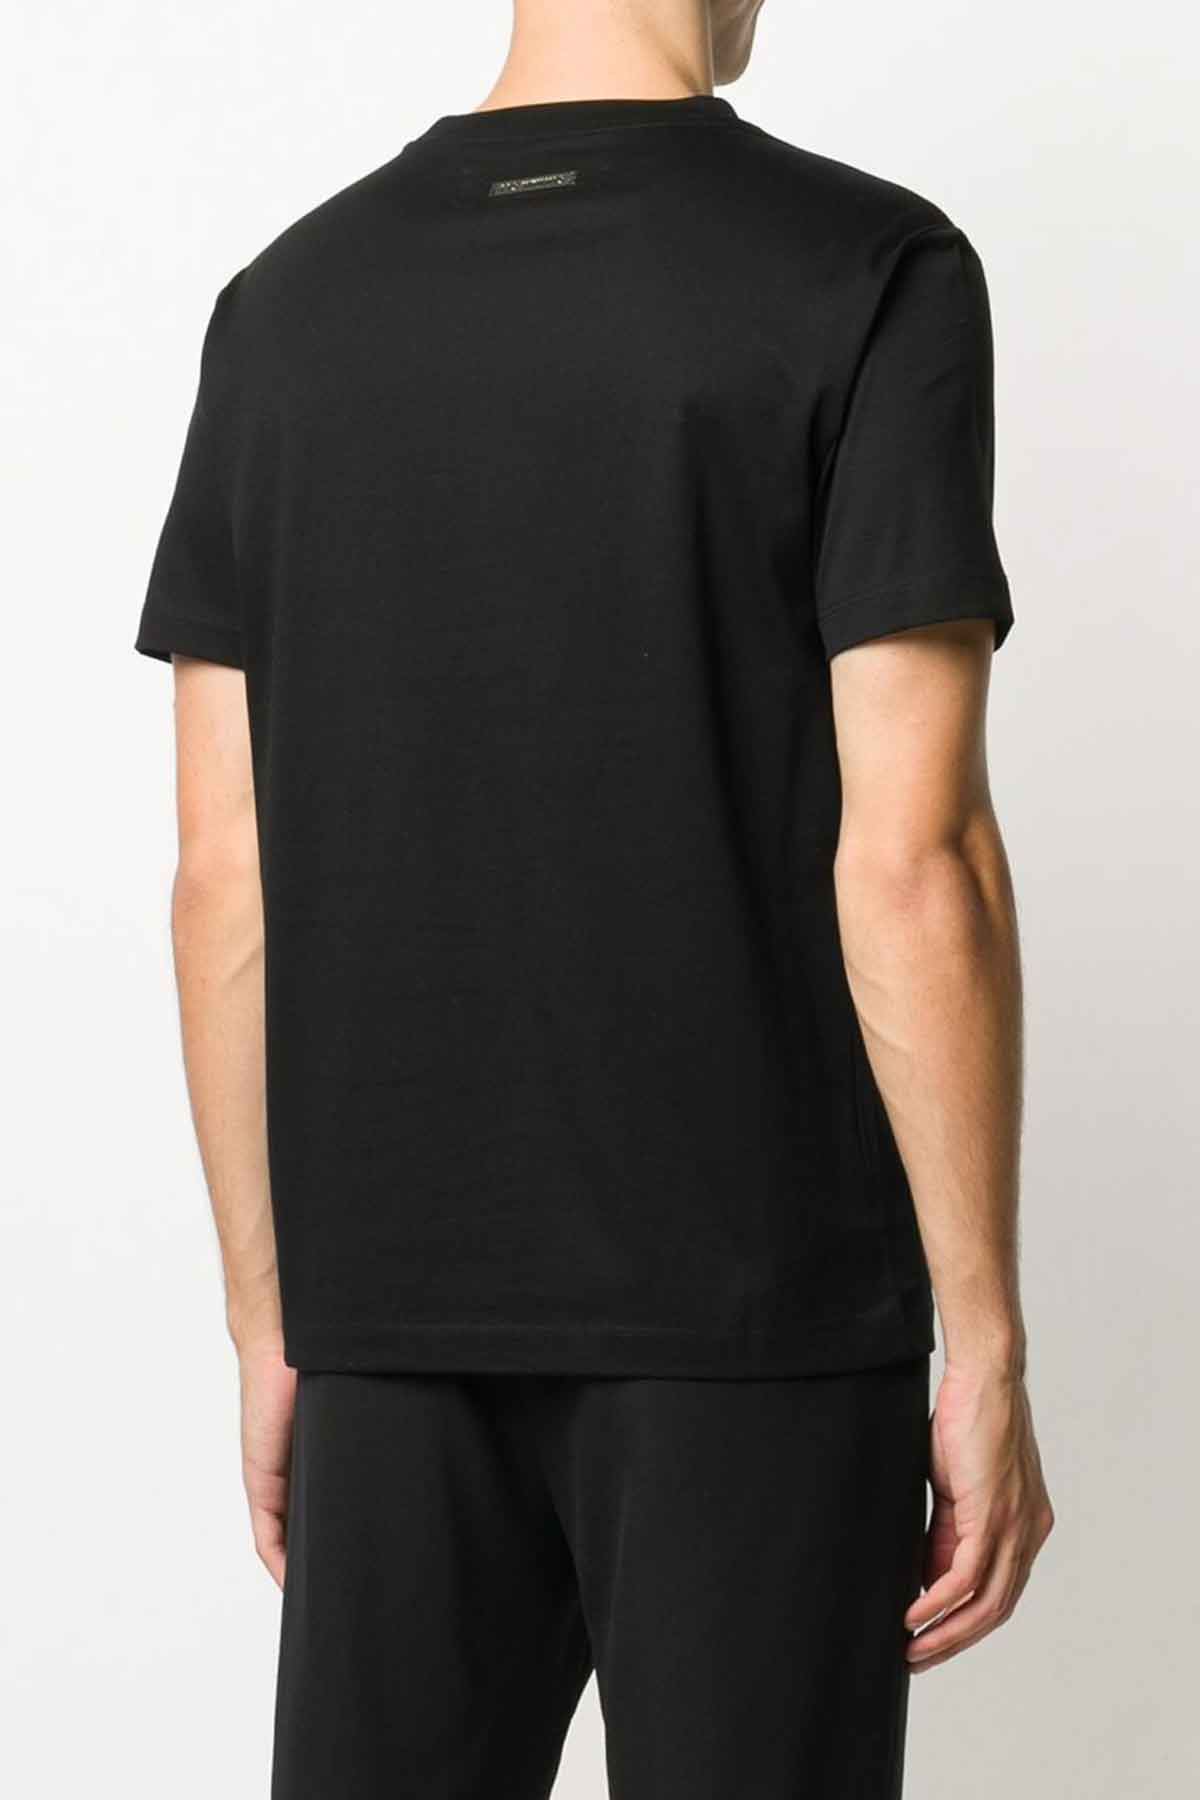 Les Hommes Boya Efektli T-shirt-Libas Trendy Fashion Store